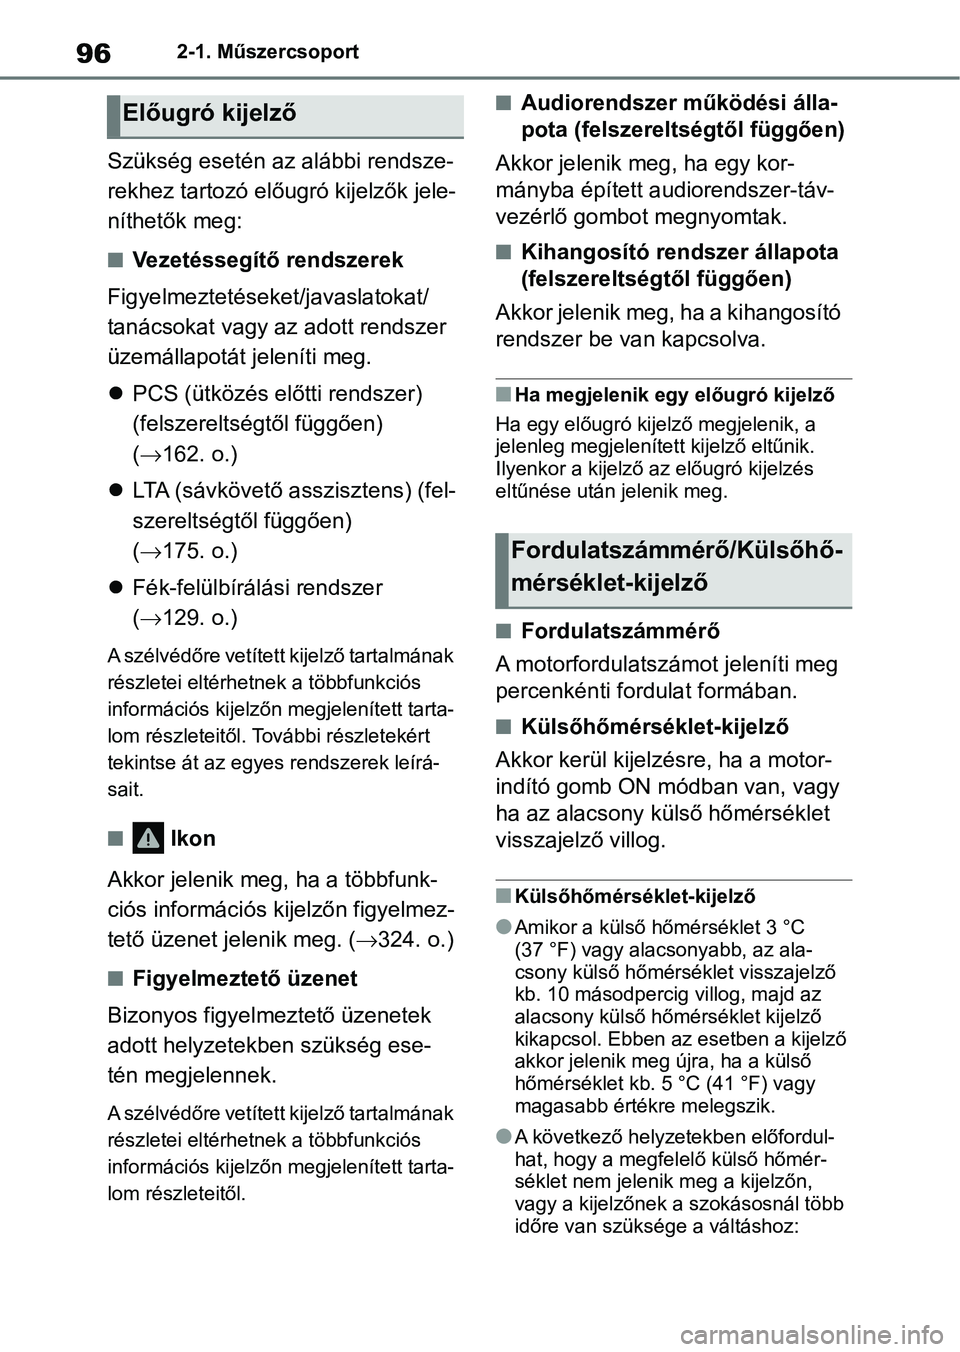 TOYOTA GR YARIS 2020  Kezelési útmutató (in Hungarian) 962-1. Műszercsoport
Szükség esetén az alábbi rendsze-
rekhez tartozó előugró kijelzők jele-
níthetők meg:
nVezetéssegítő rendszerek
Figyelmeztetéseket/javaslatokat/ 
tanácsokat vagy a